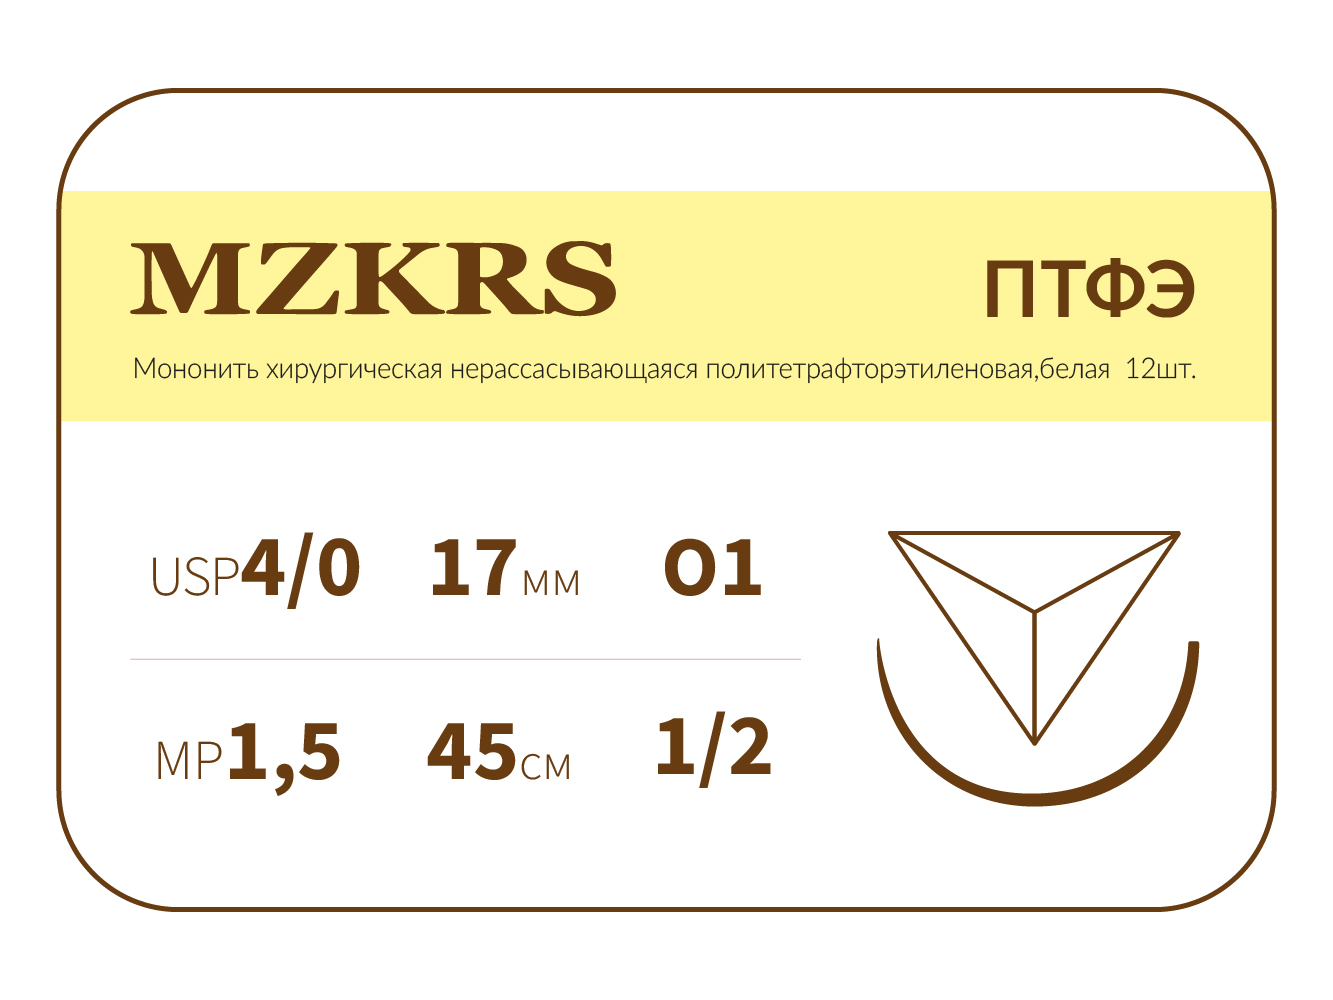 1712О1-Premium 4/0 (1.5) 45 ПТФЭ хирургическая нить политетрафторэтиленовая, MZKRS (Россия)